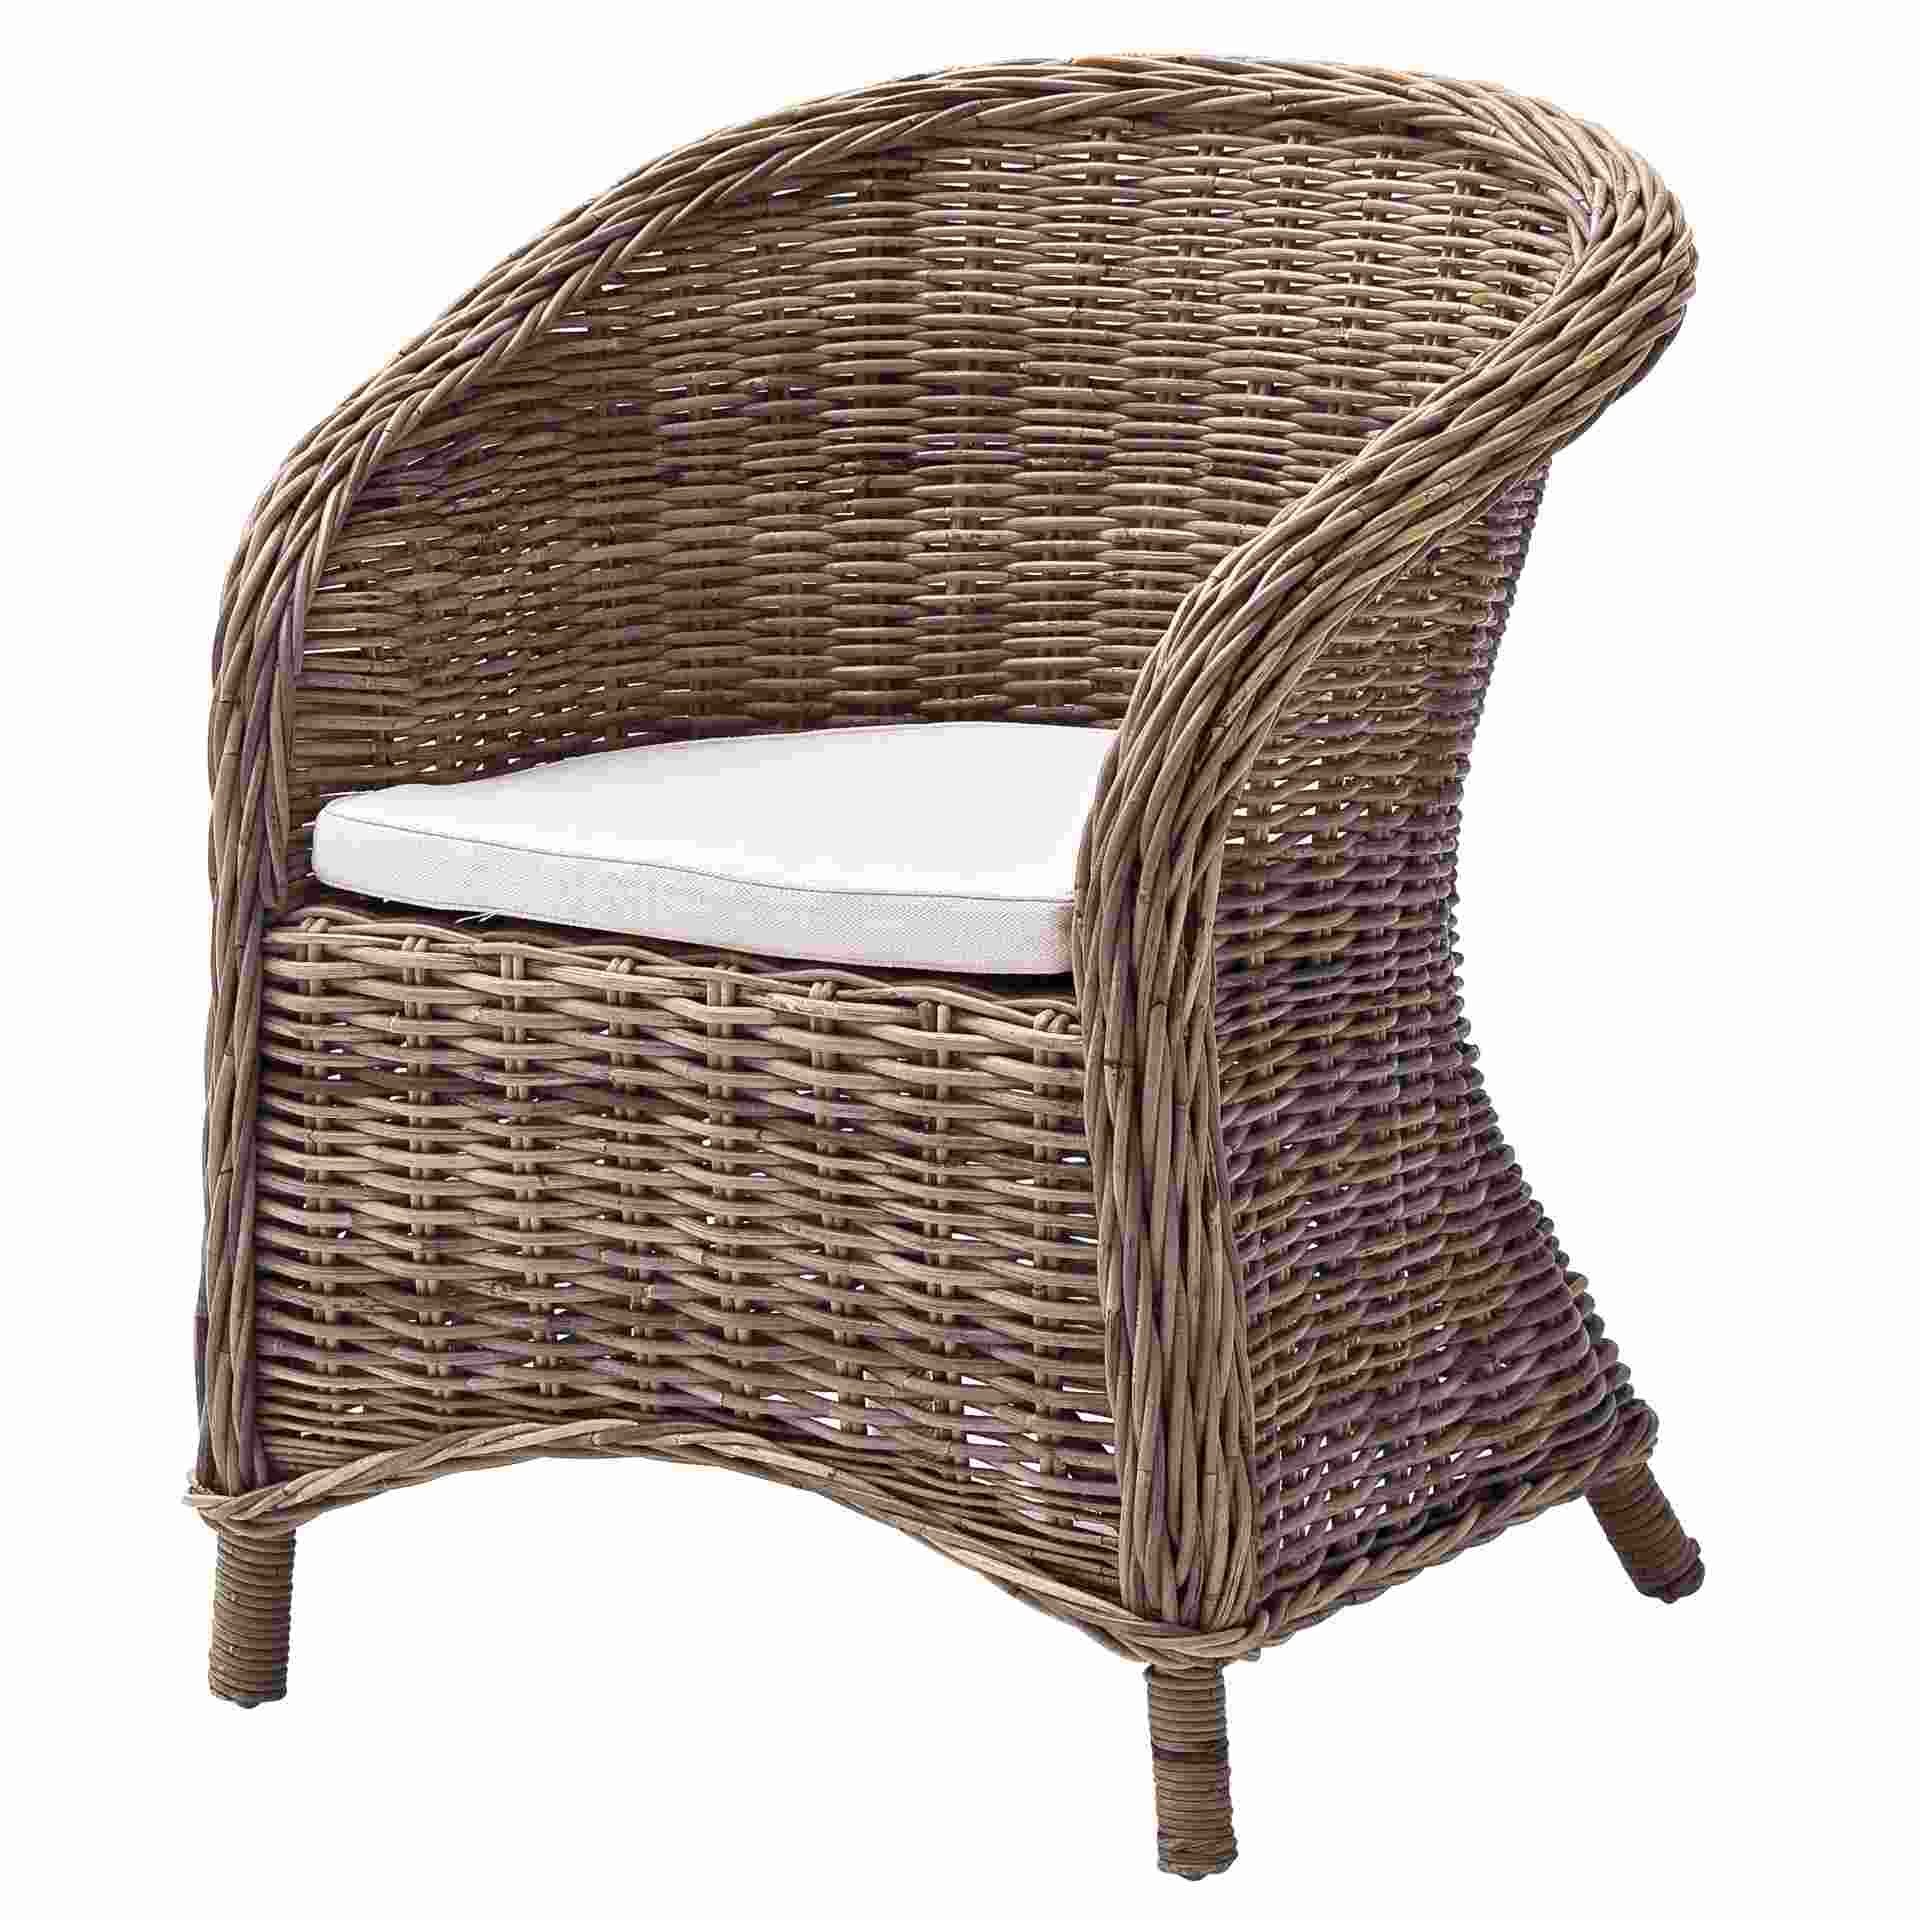 Der Stuhl Bonsun überzeugt mit seinem Landhaus Stil. Gefertigt wurde er aus Kabu Rattan, welches einen natürlichen Farbton besitzt. Der Stuhl verfügt über eine Armlehne. Die Sitzhöhe beträgt beträgt 44 cm.